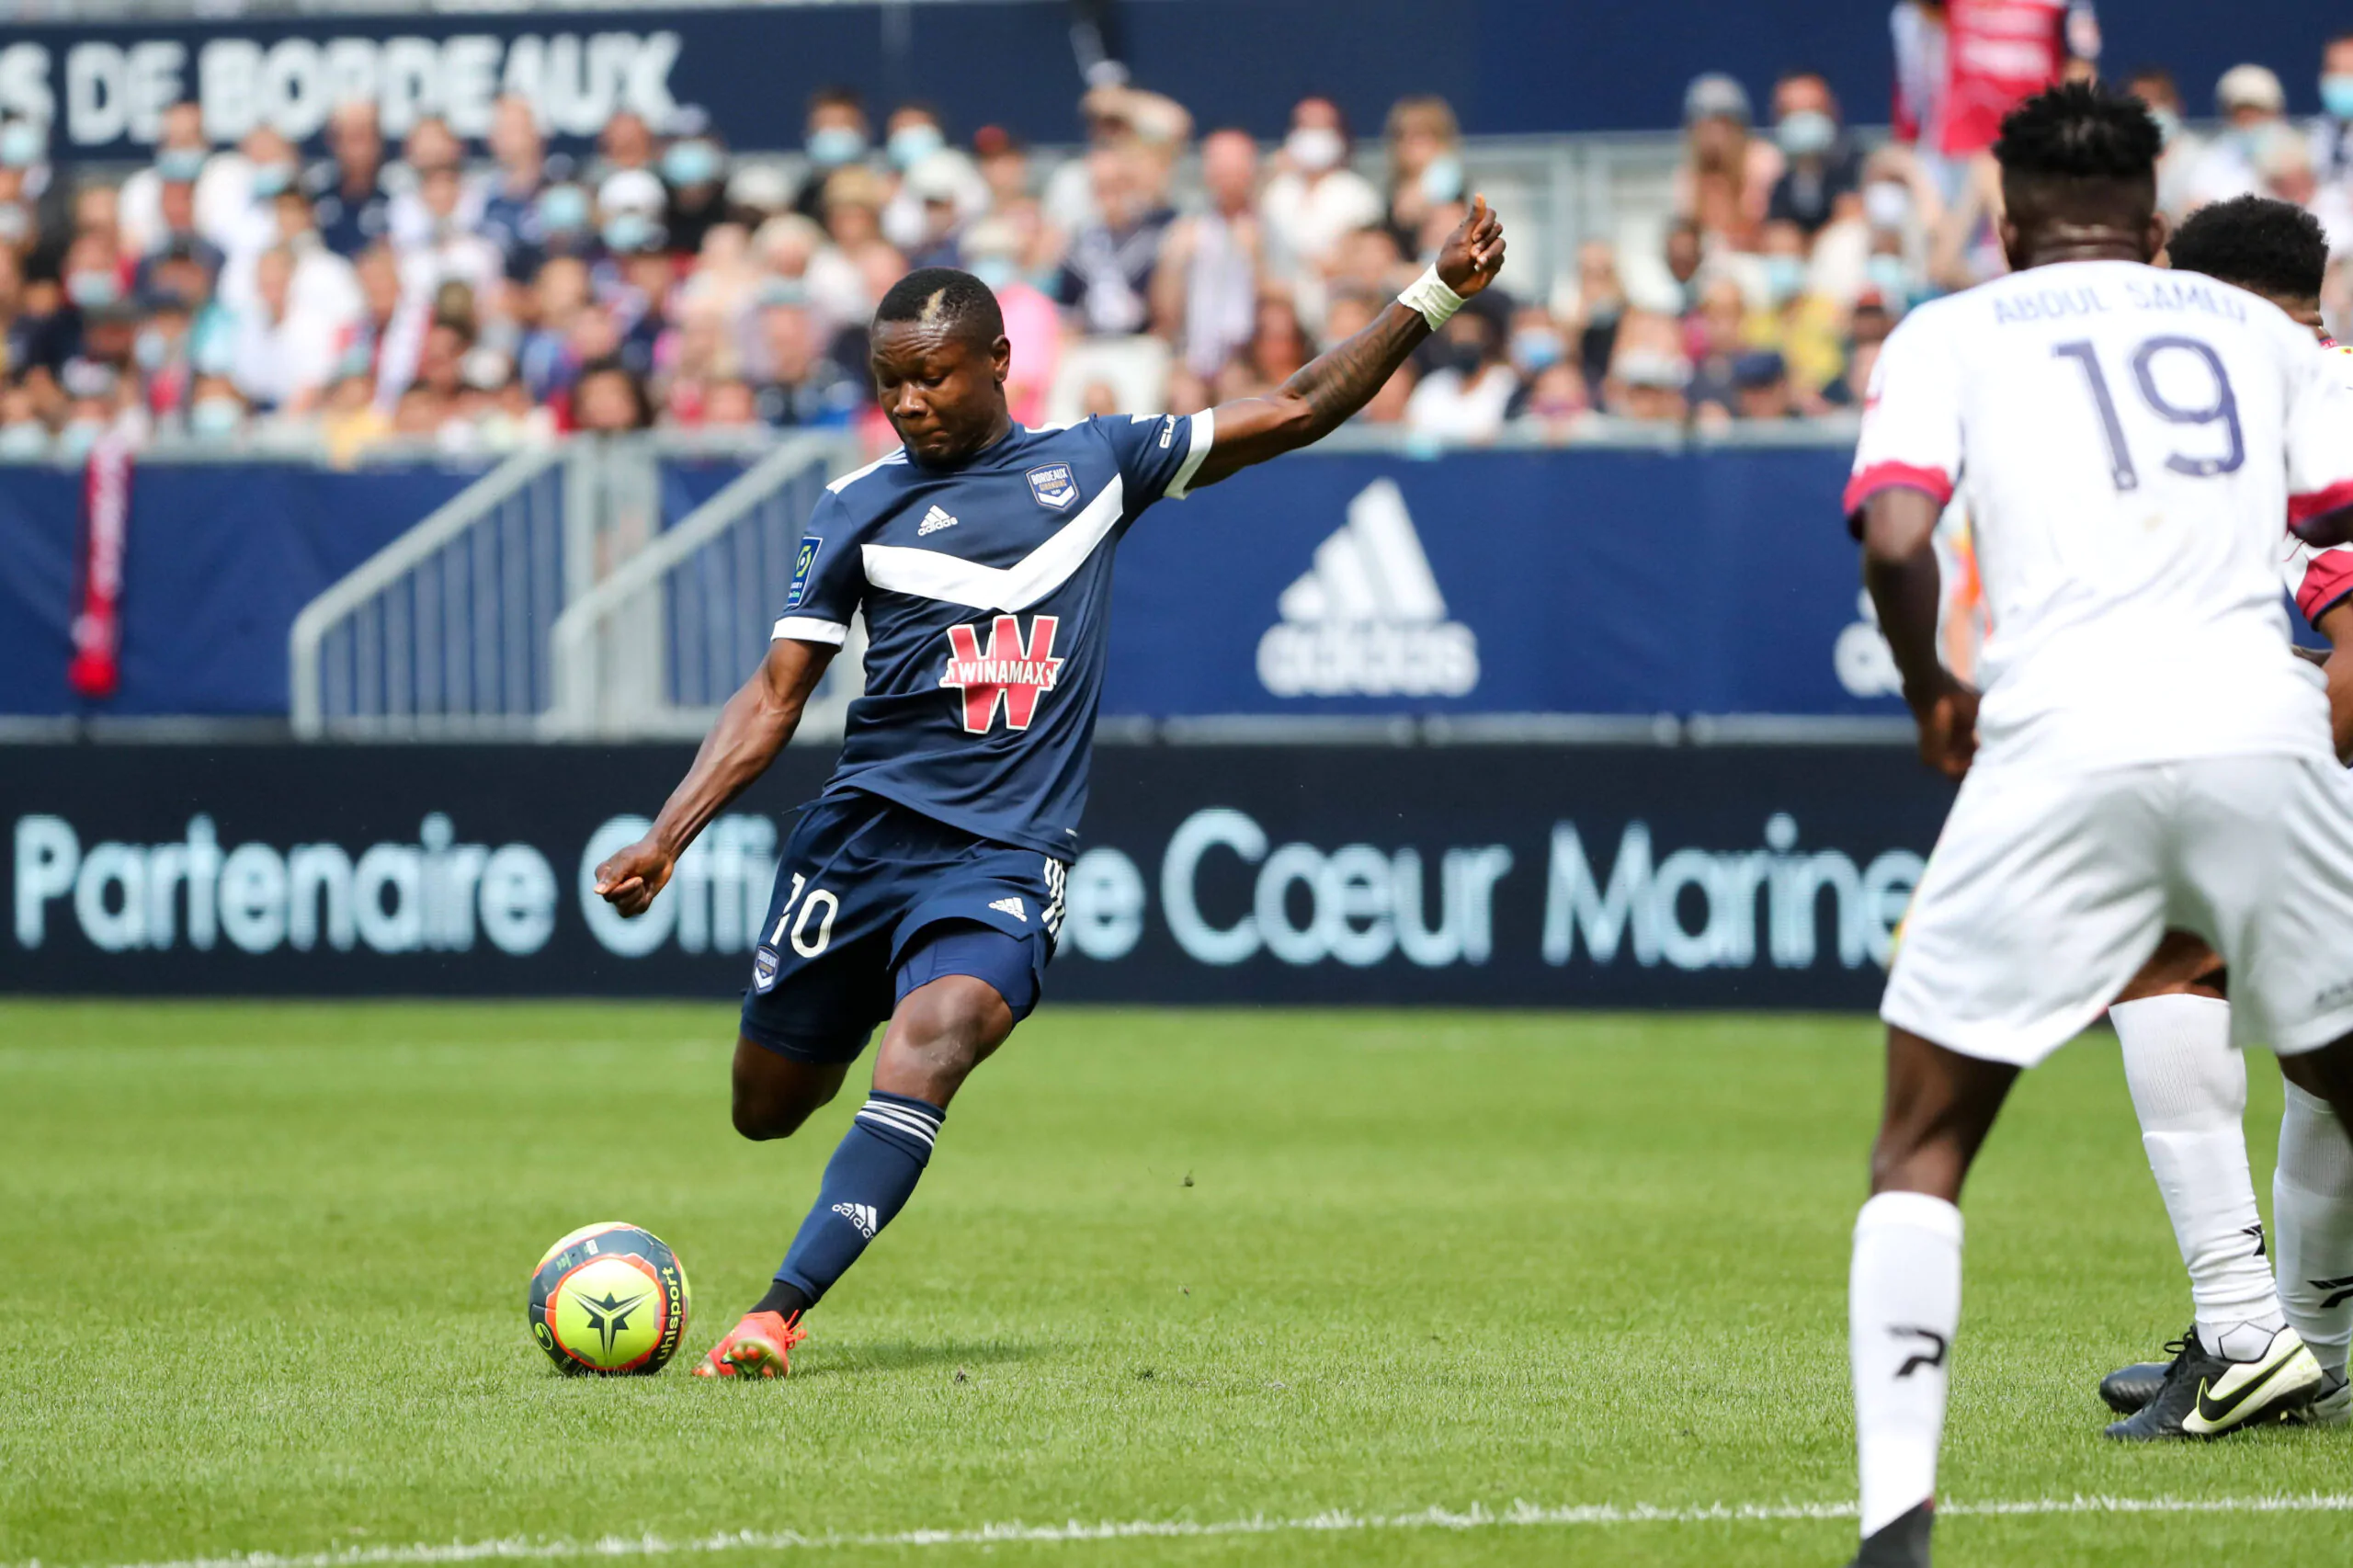 Ligue 1, paura per Kalu durante Marsiglia-Bordeaux: il giocatore si accascia in campo